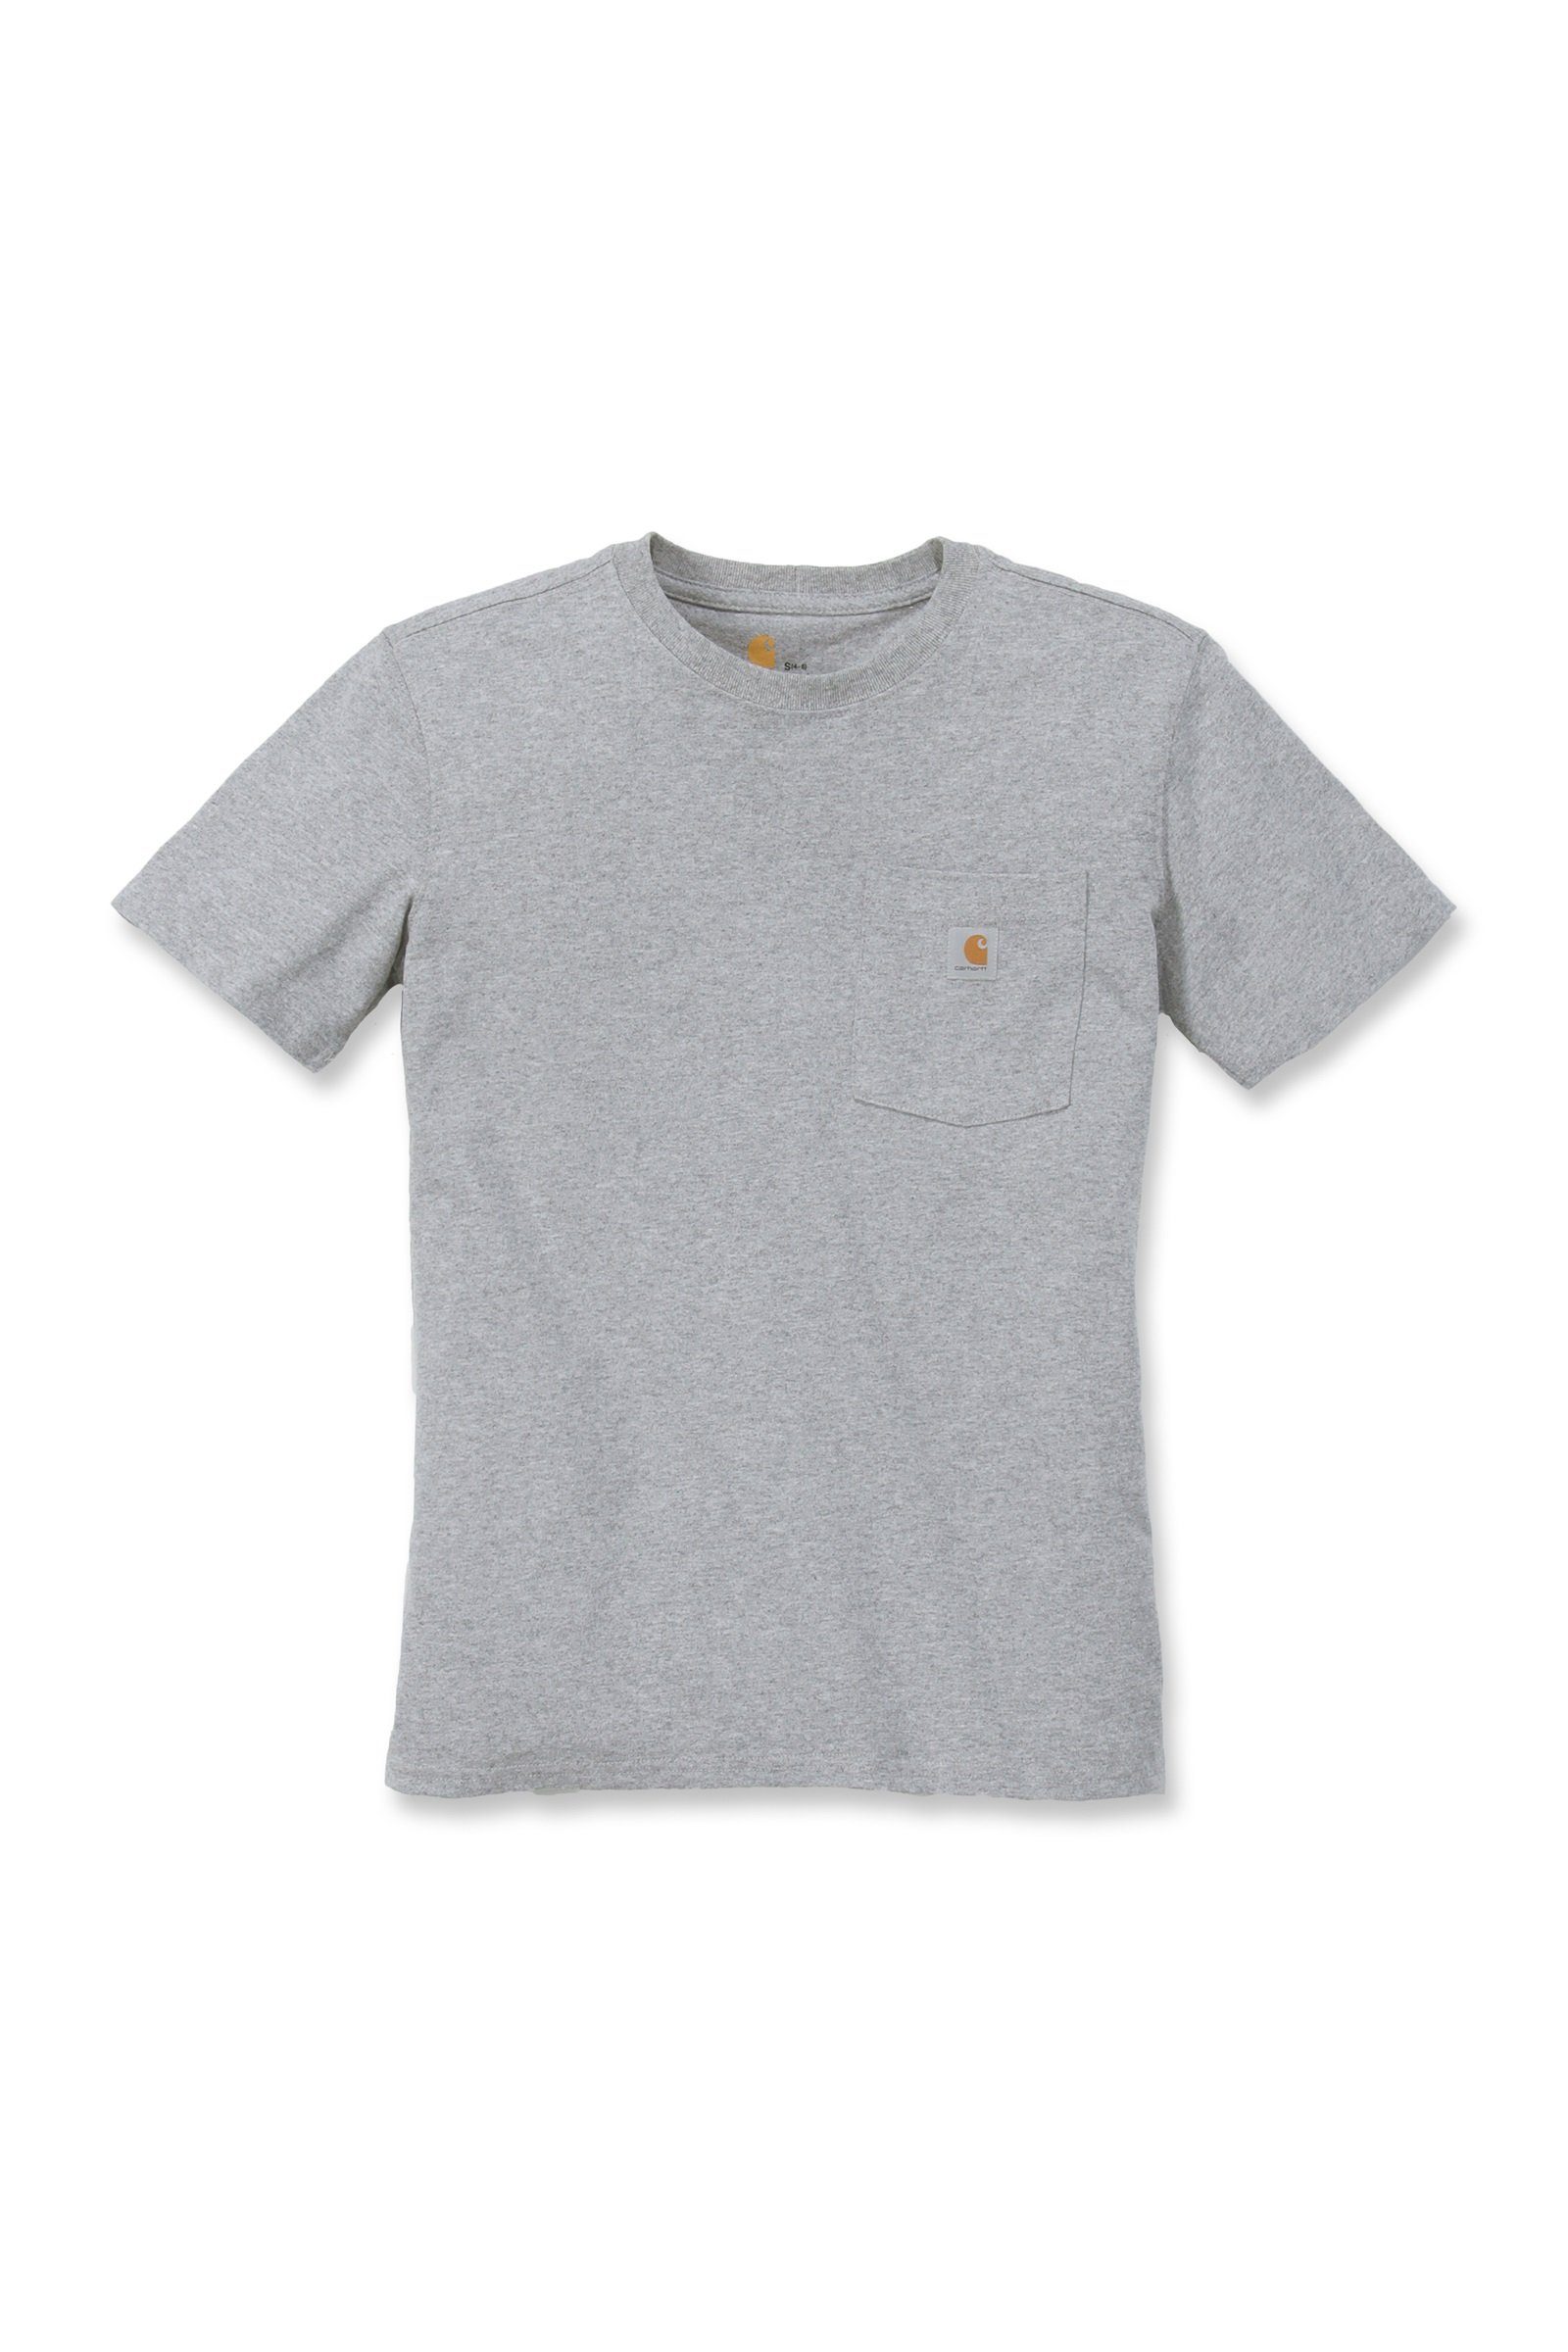 Short-Sleeve Loose Heavyweight grey Fit Damen Pocket Carhartt heather T-Shirt T-Shirt Carhartt Adult